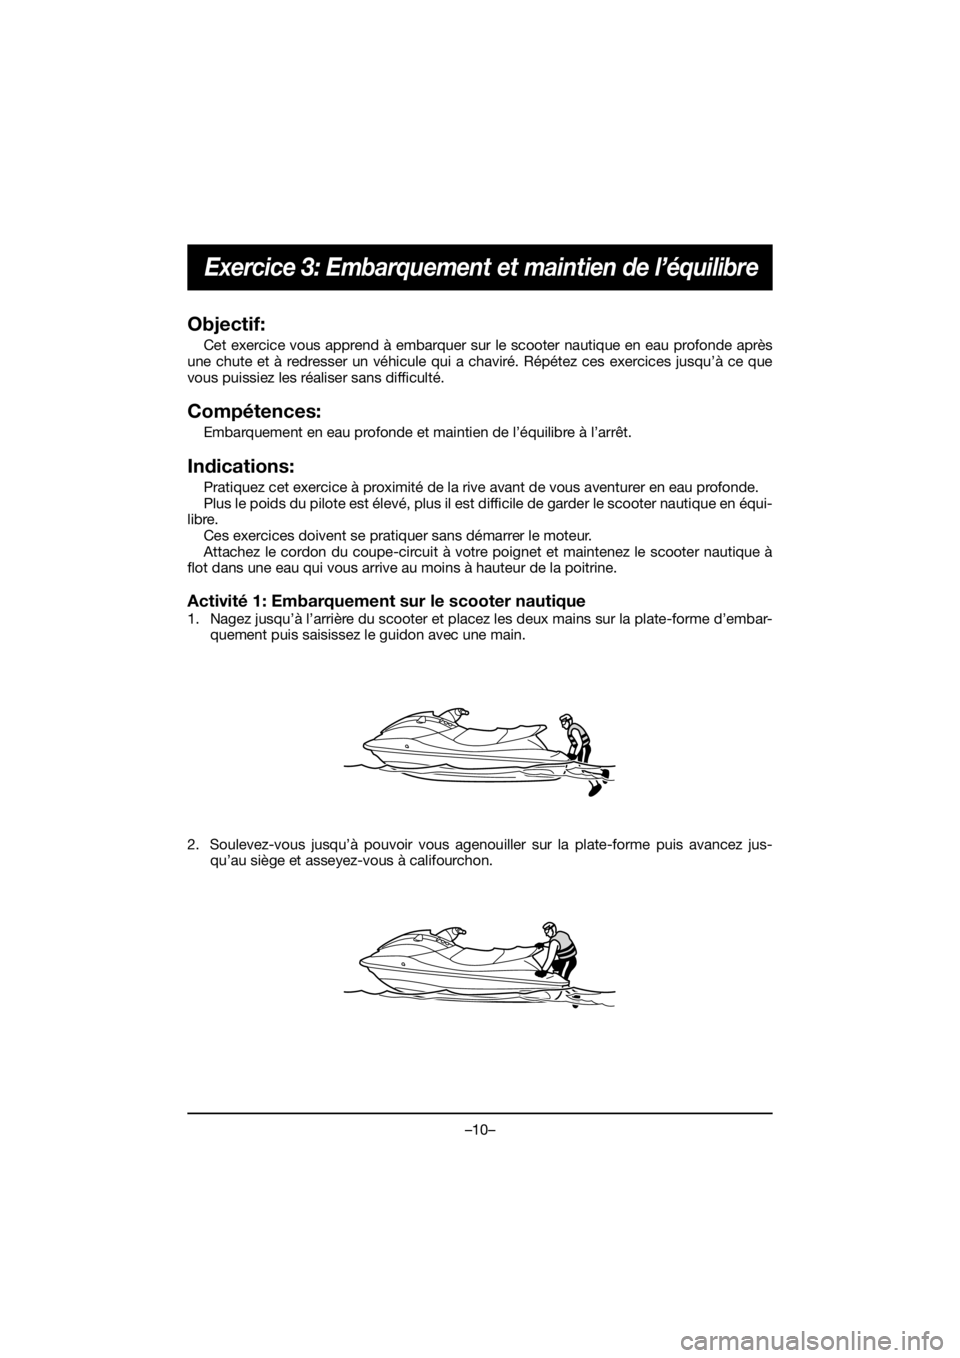 YAMAHA EX 2019  Notices Demploi (in French) –10–
Exercice 3: Embarquement et maintien de l’équilibre
Objectif:
Cet exercice vous apprend à embarquer sur le scooter nautique en eau profonde après
une chute et à redresser un véhicule q